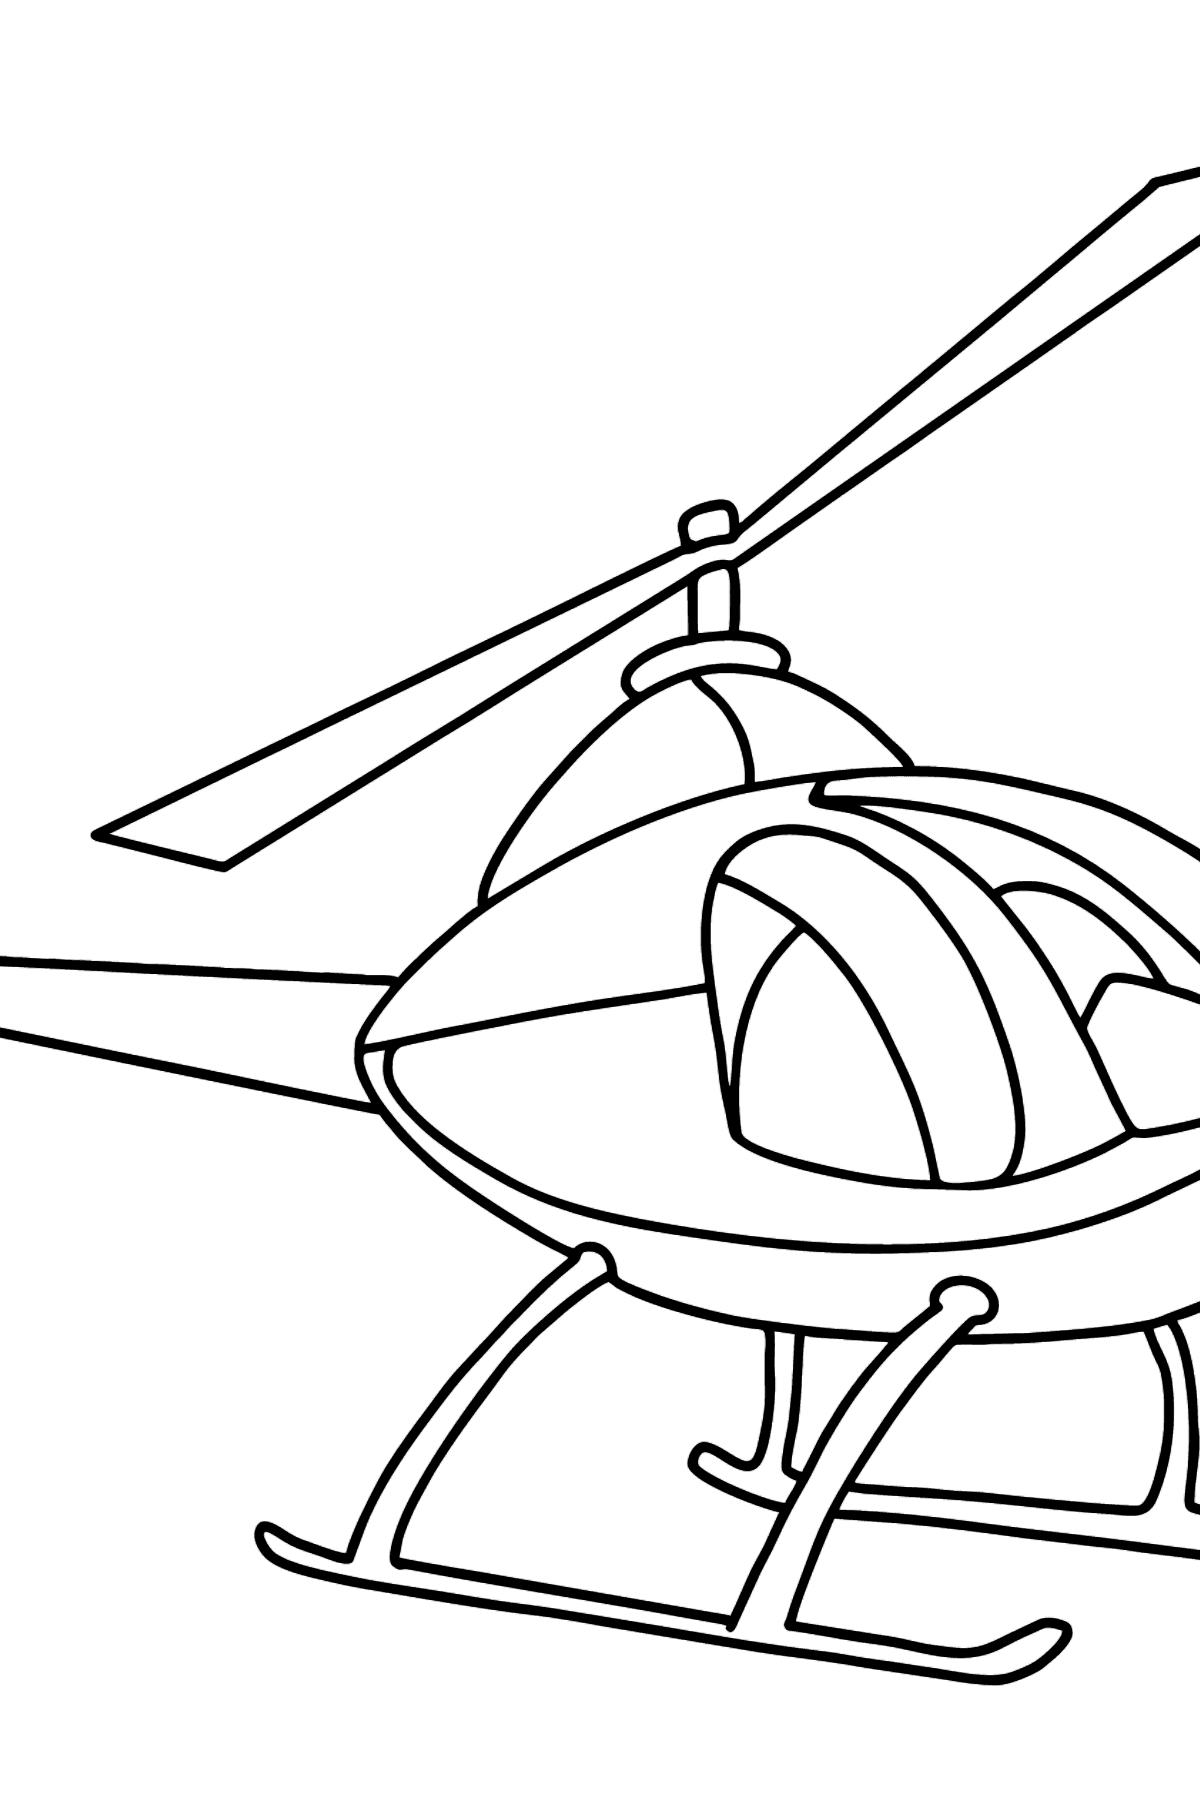 Kleurplaat helikopter voor kinderen - kleurplaten voor kinderen